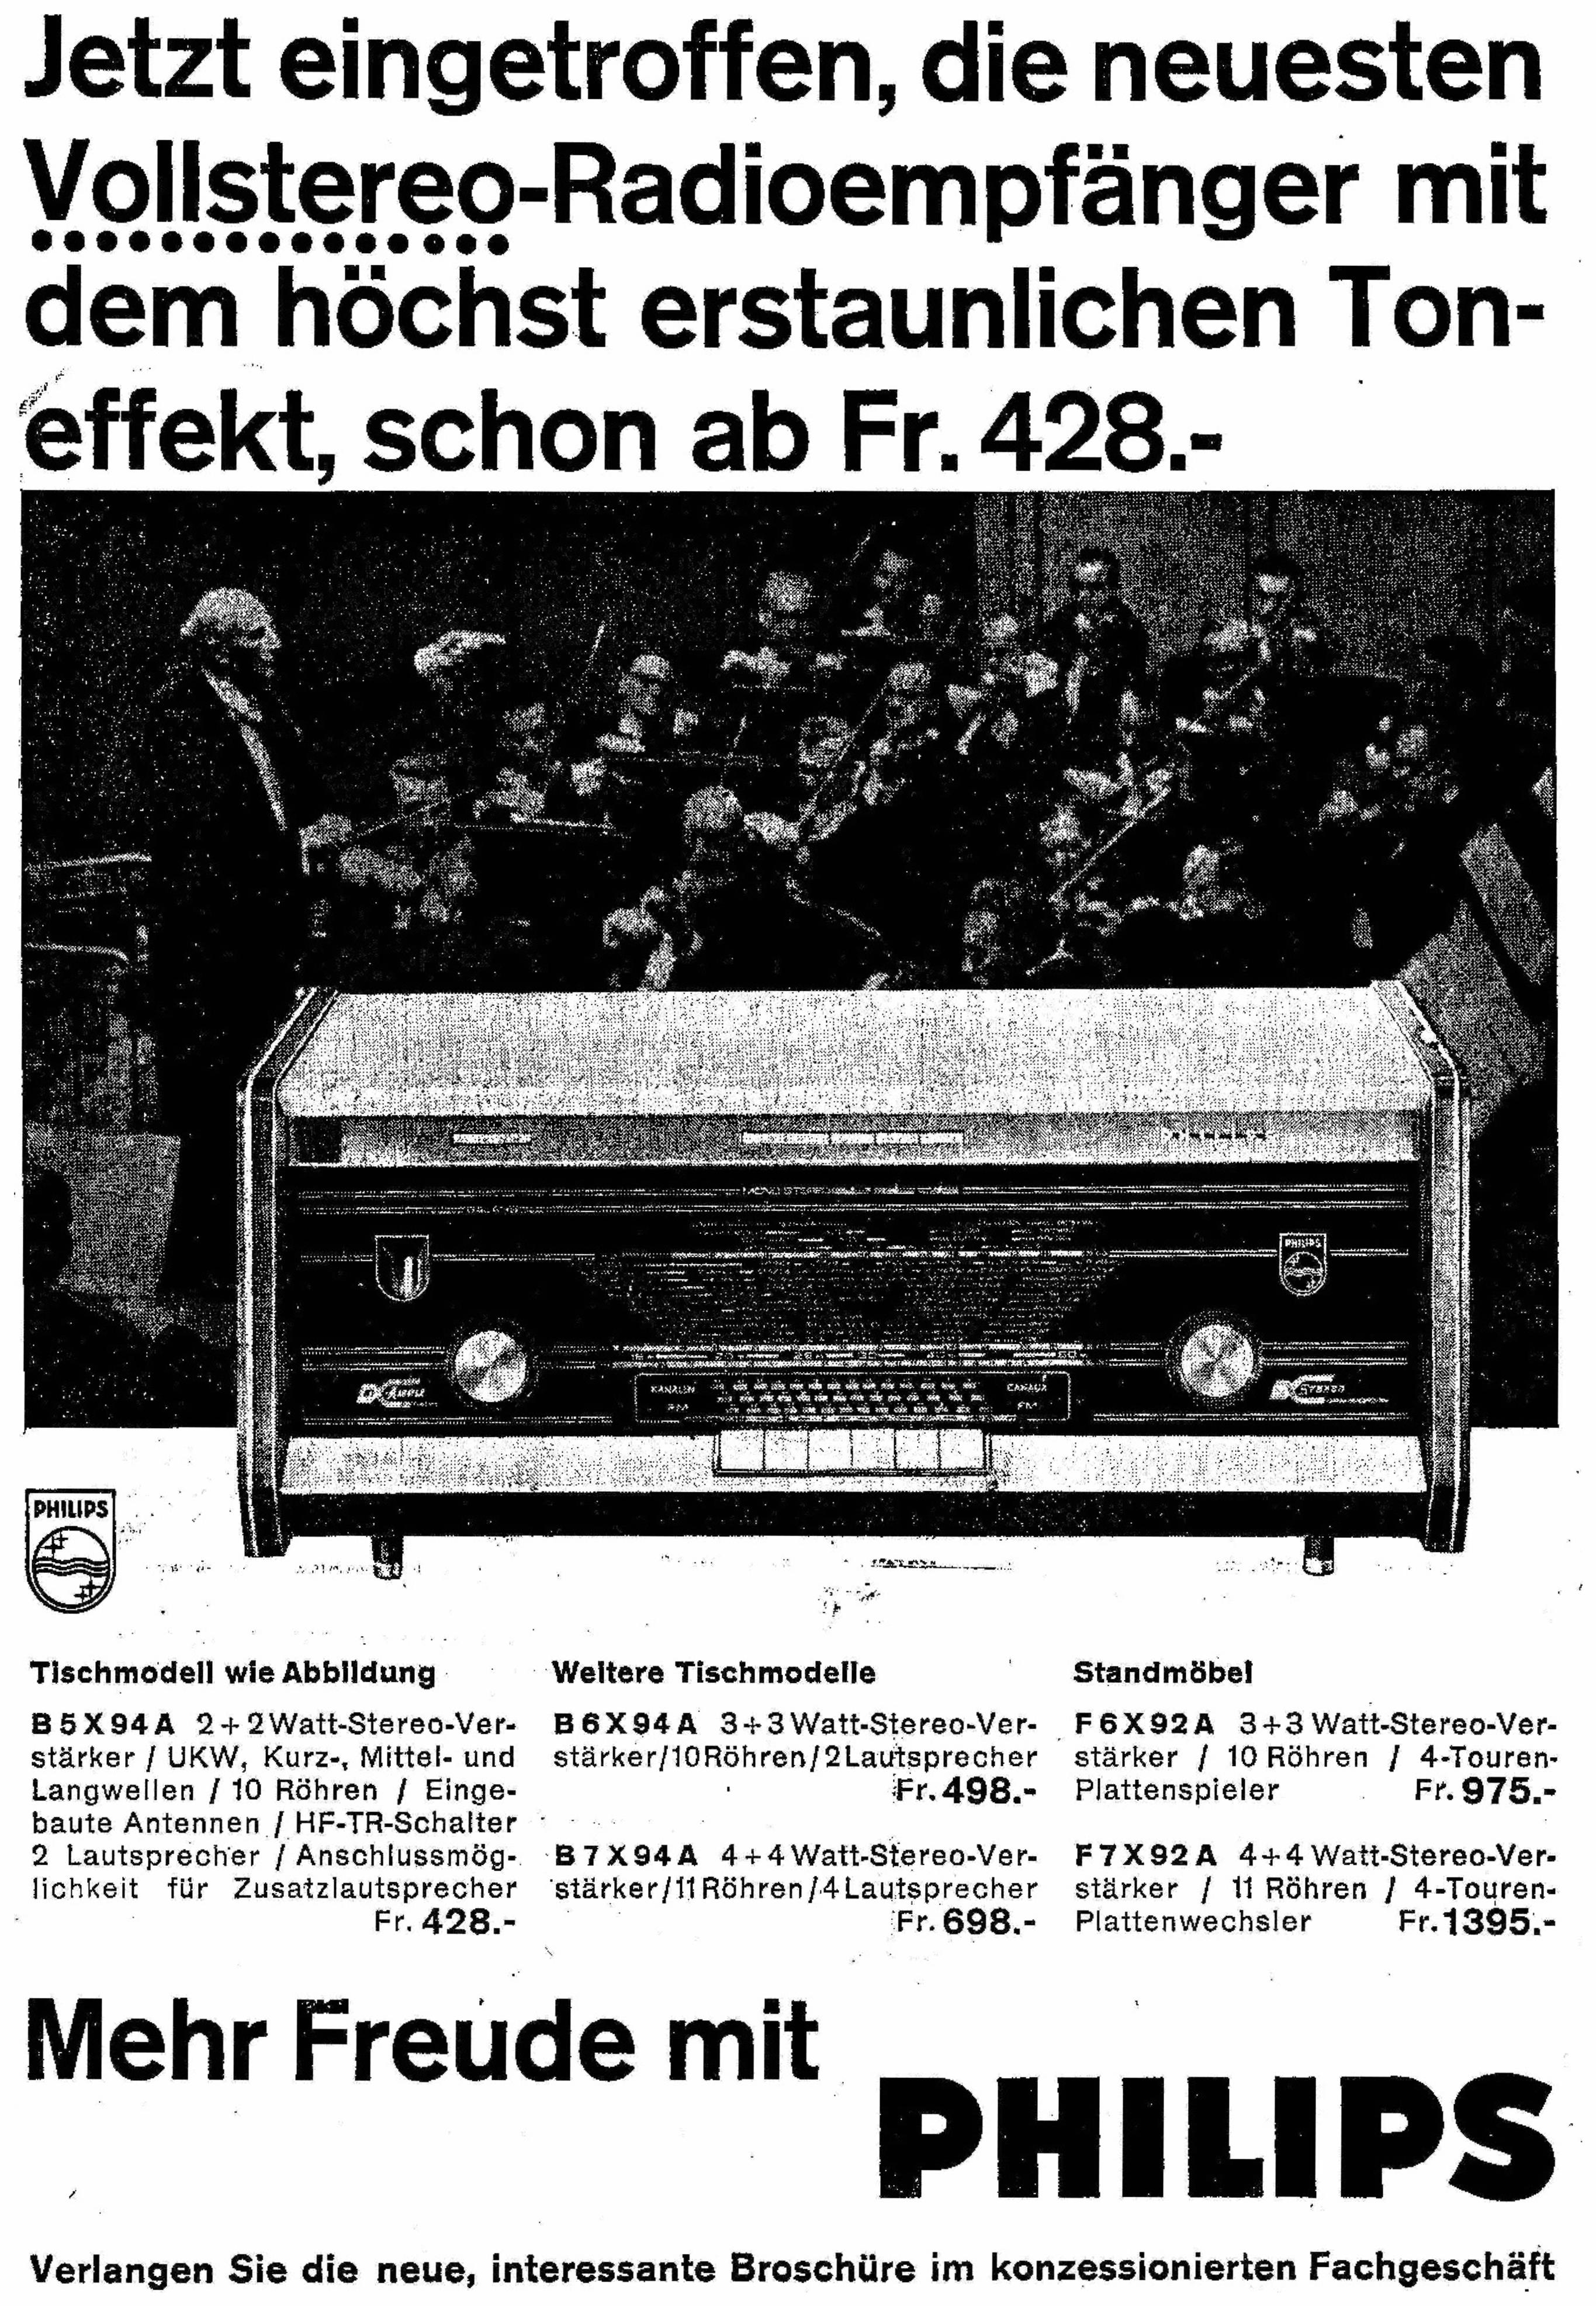 Philips 1959 021.jpg